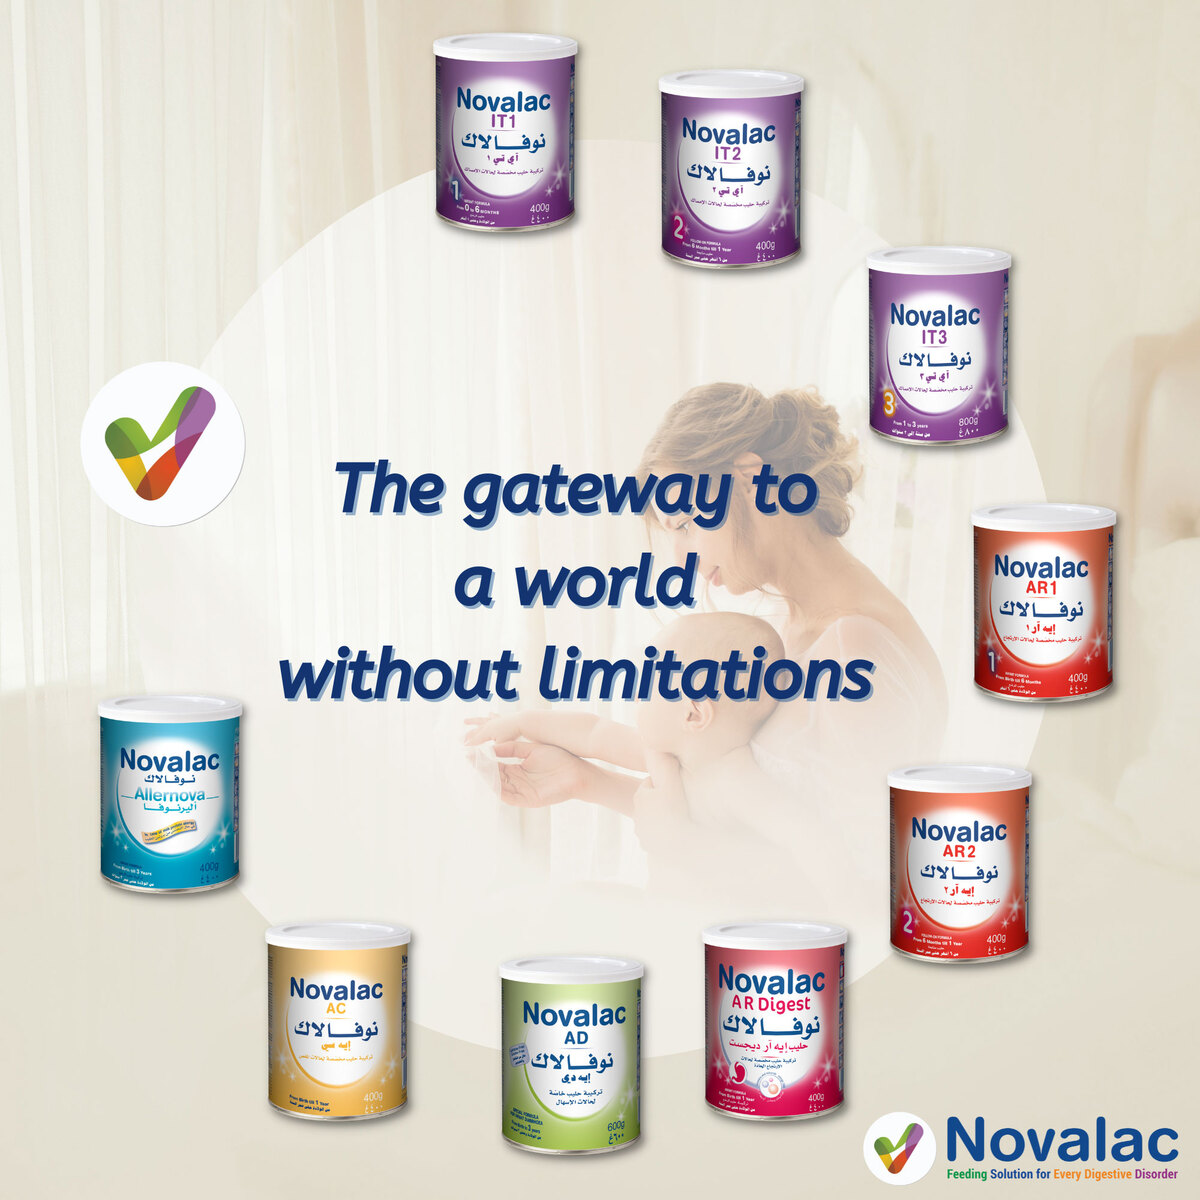 Novalac AR Digest Anti-Regurgitation Infant Milk Formula From 0-12 Months 400 g